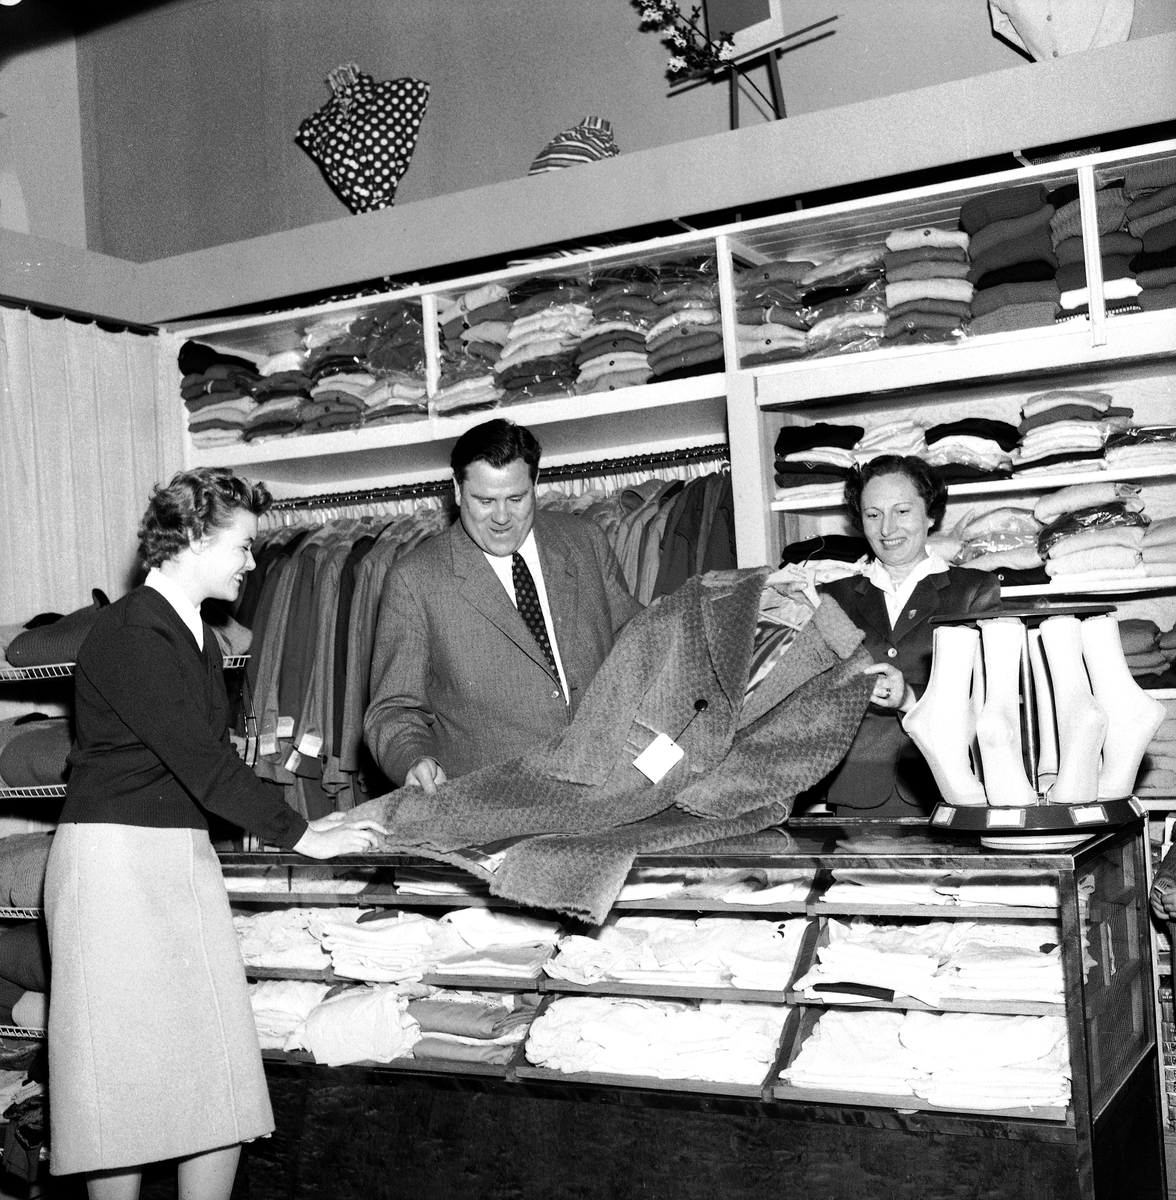 Ahlstrands kläder 10 år.
27 september 1958.